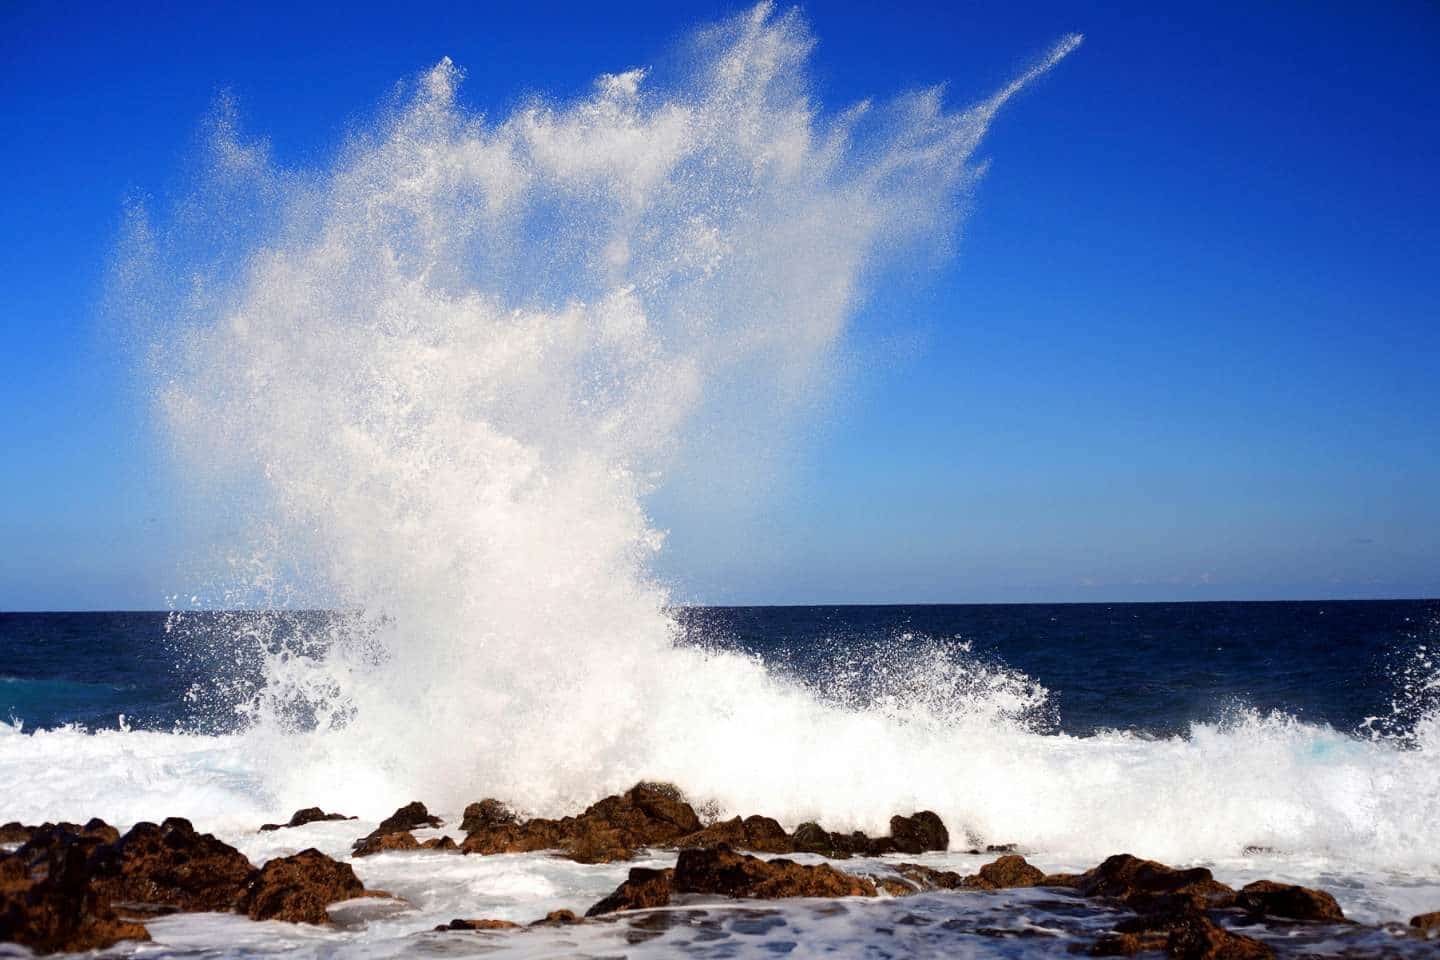 Big splash of waves in Tenerife